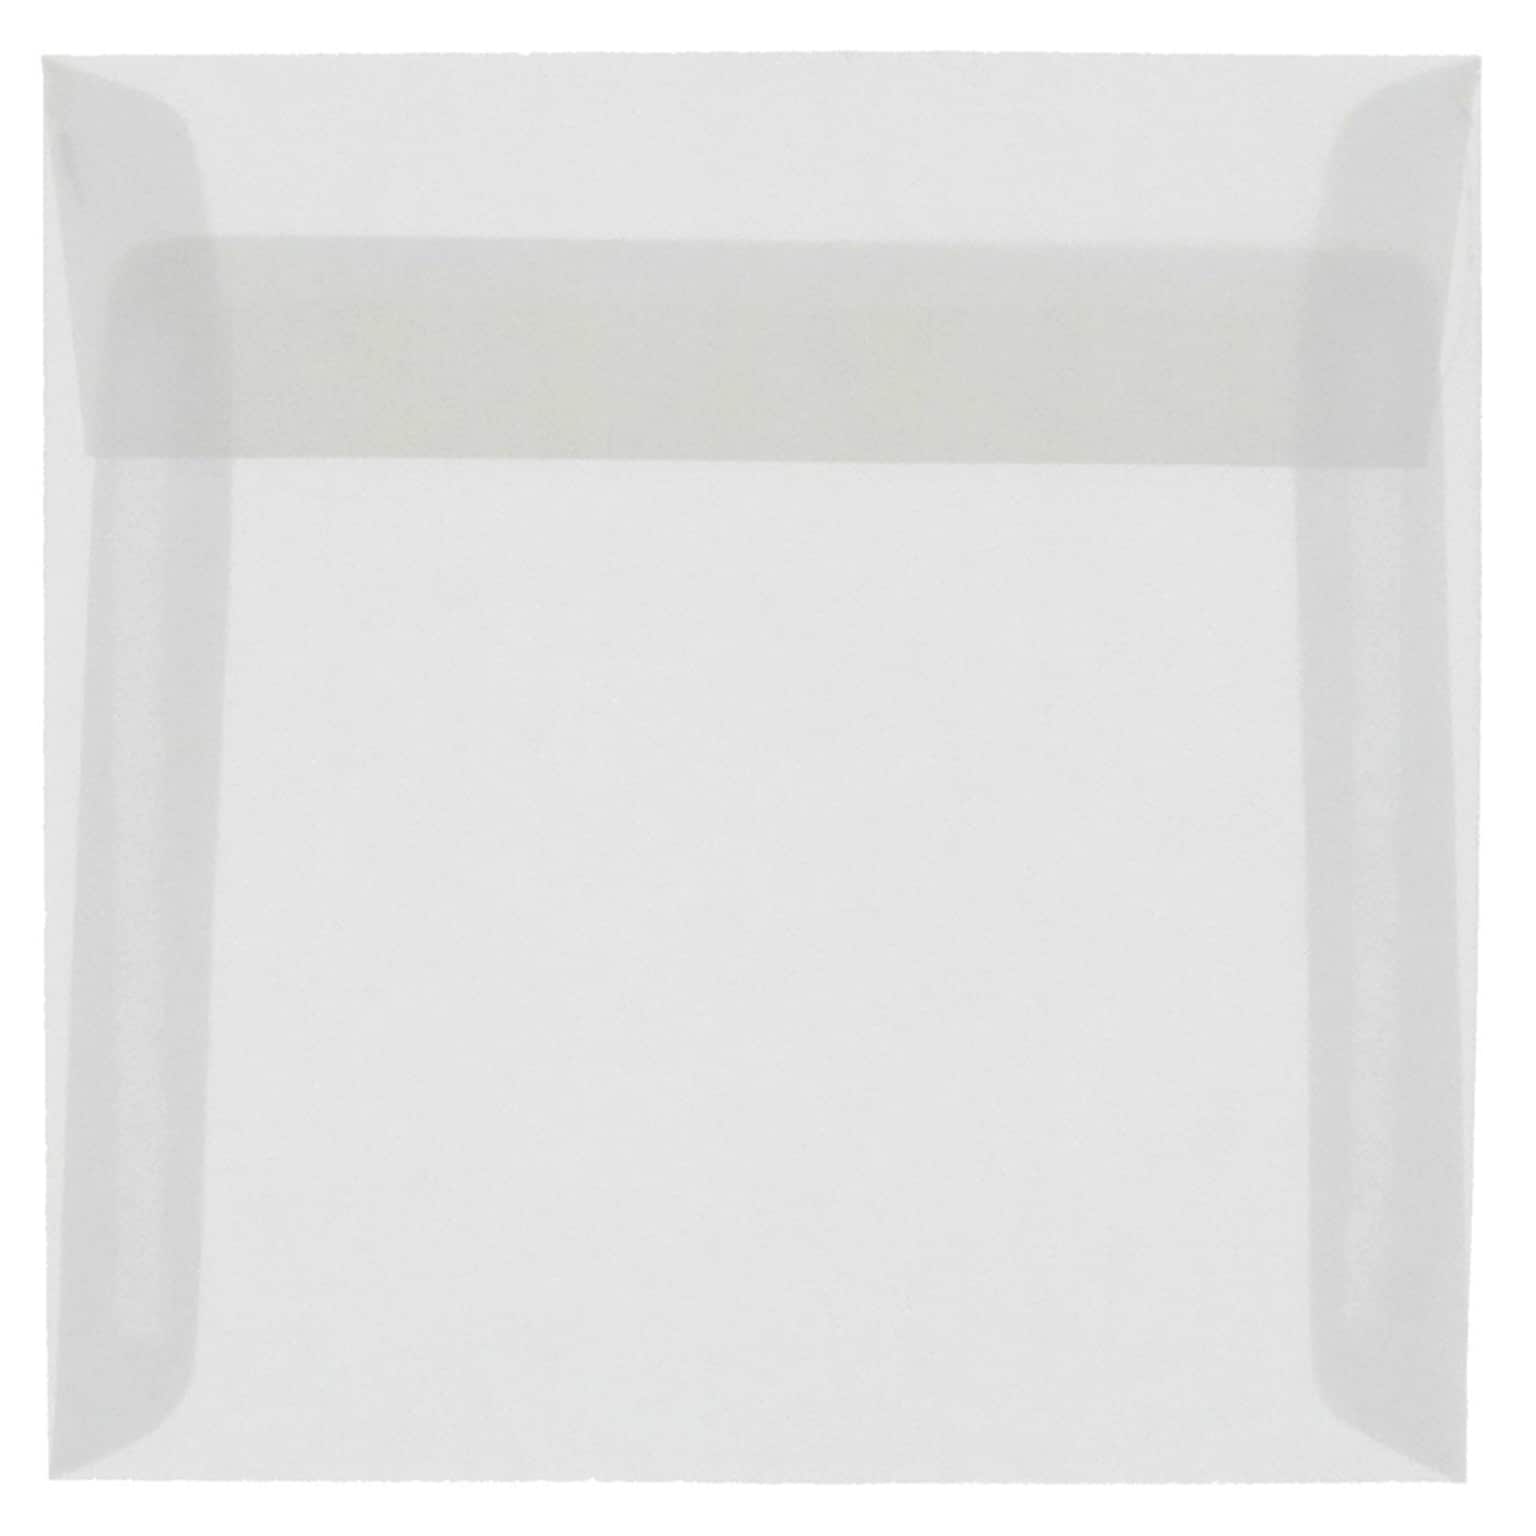 JAM Paper 9.5 x 9.5 Square Translucent Vellum Invitation Envelopes, Clear, 25/Pack (2851357)